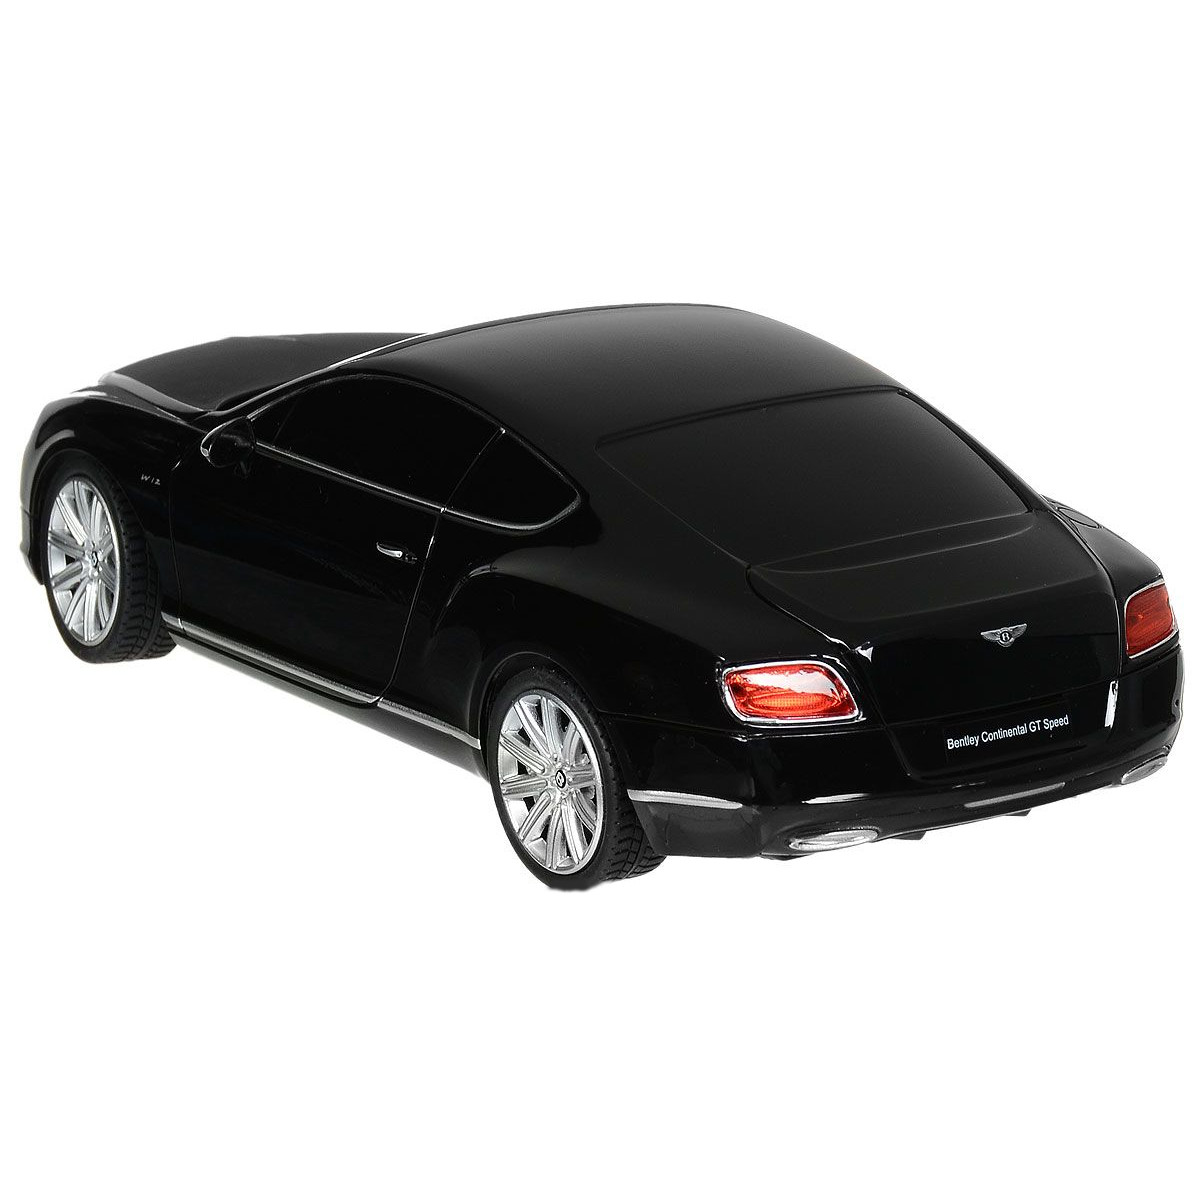 Радиоуправляемая машина - Bentley Continental GT Speed, цвет черный, 1:24, 27MHZ  